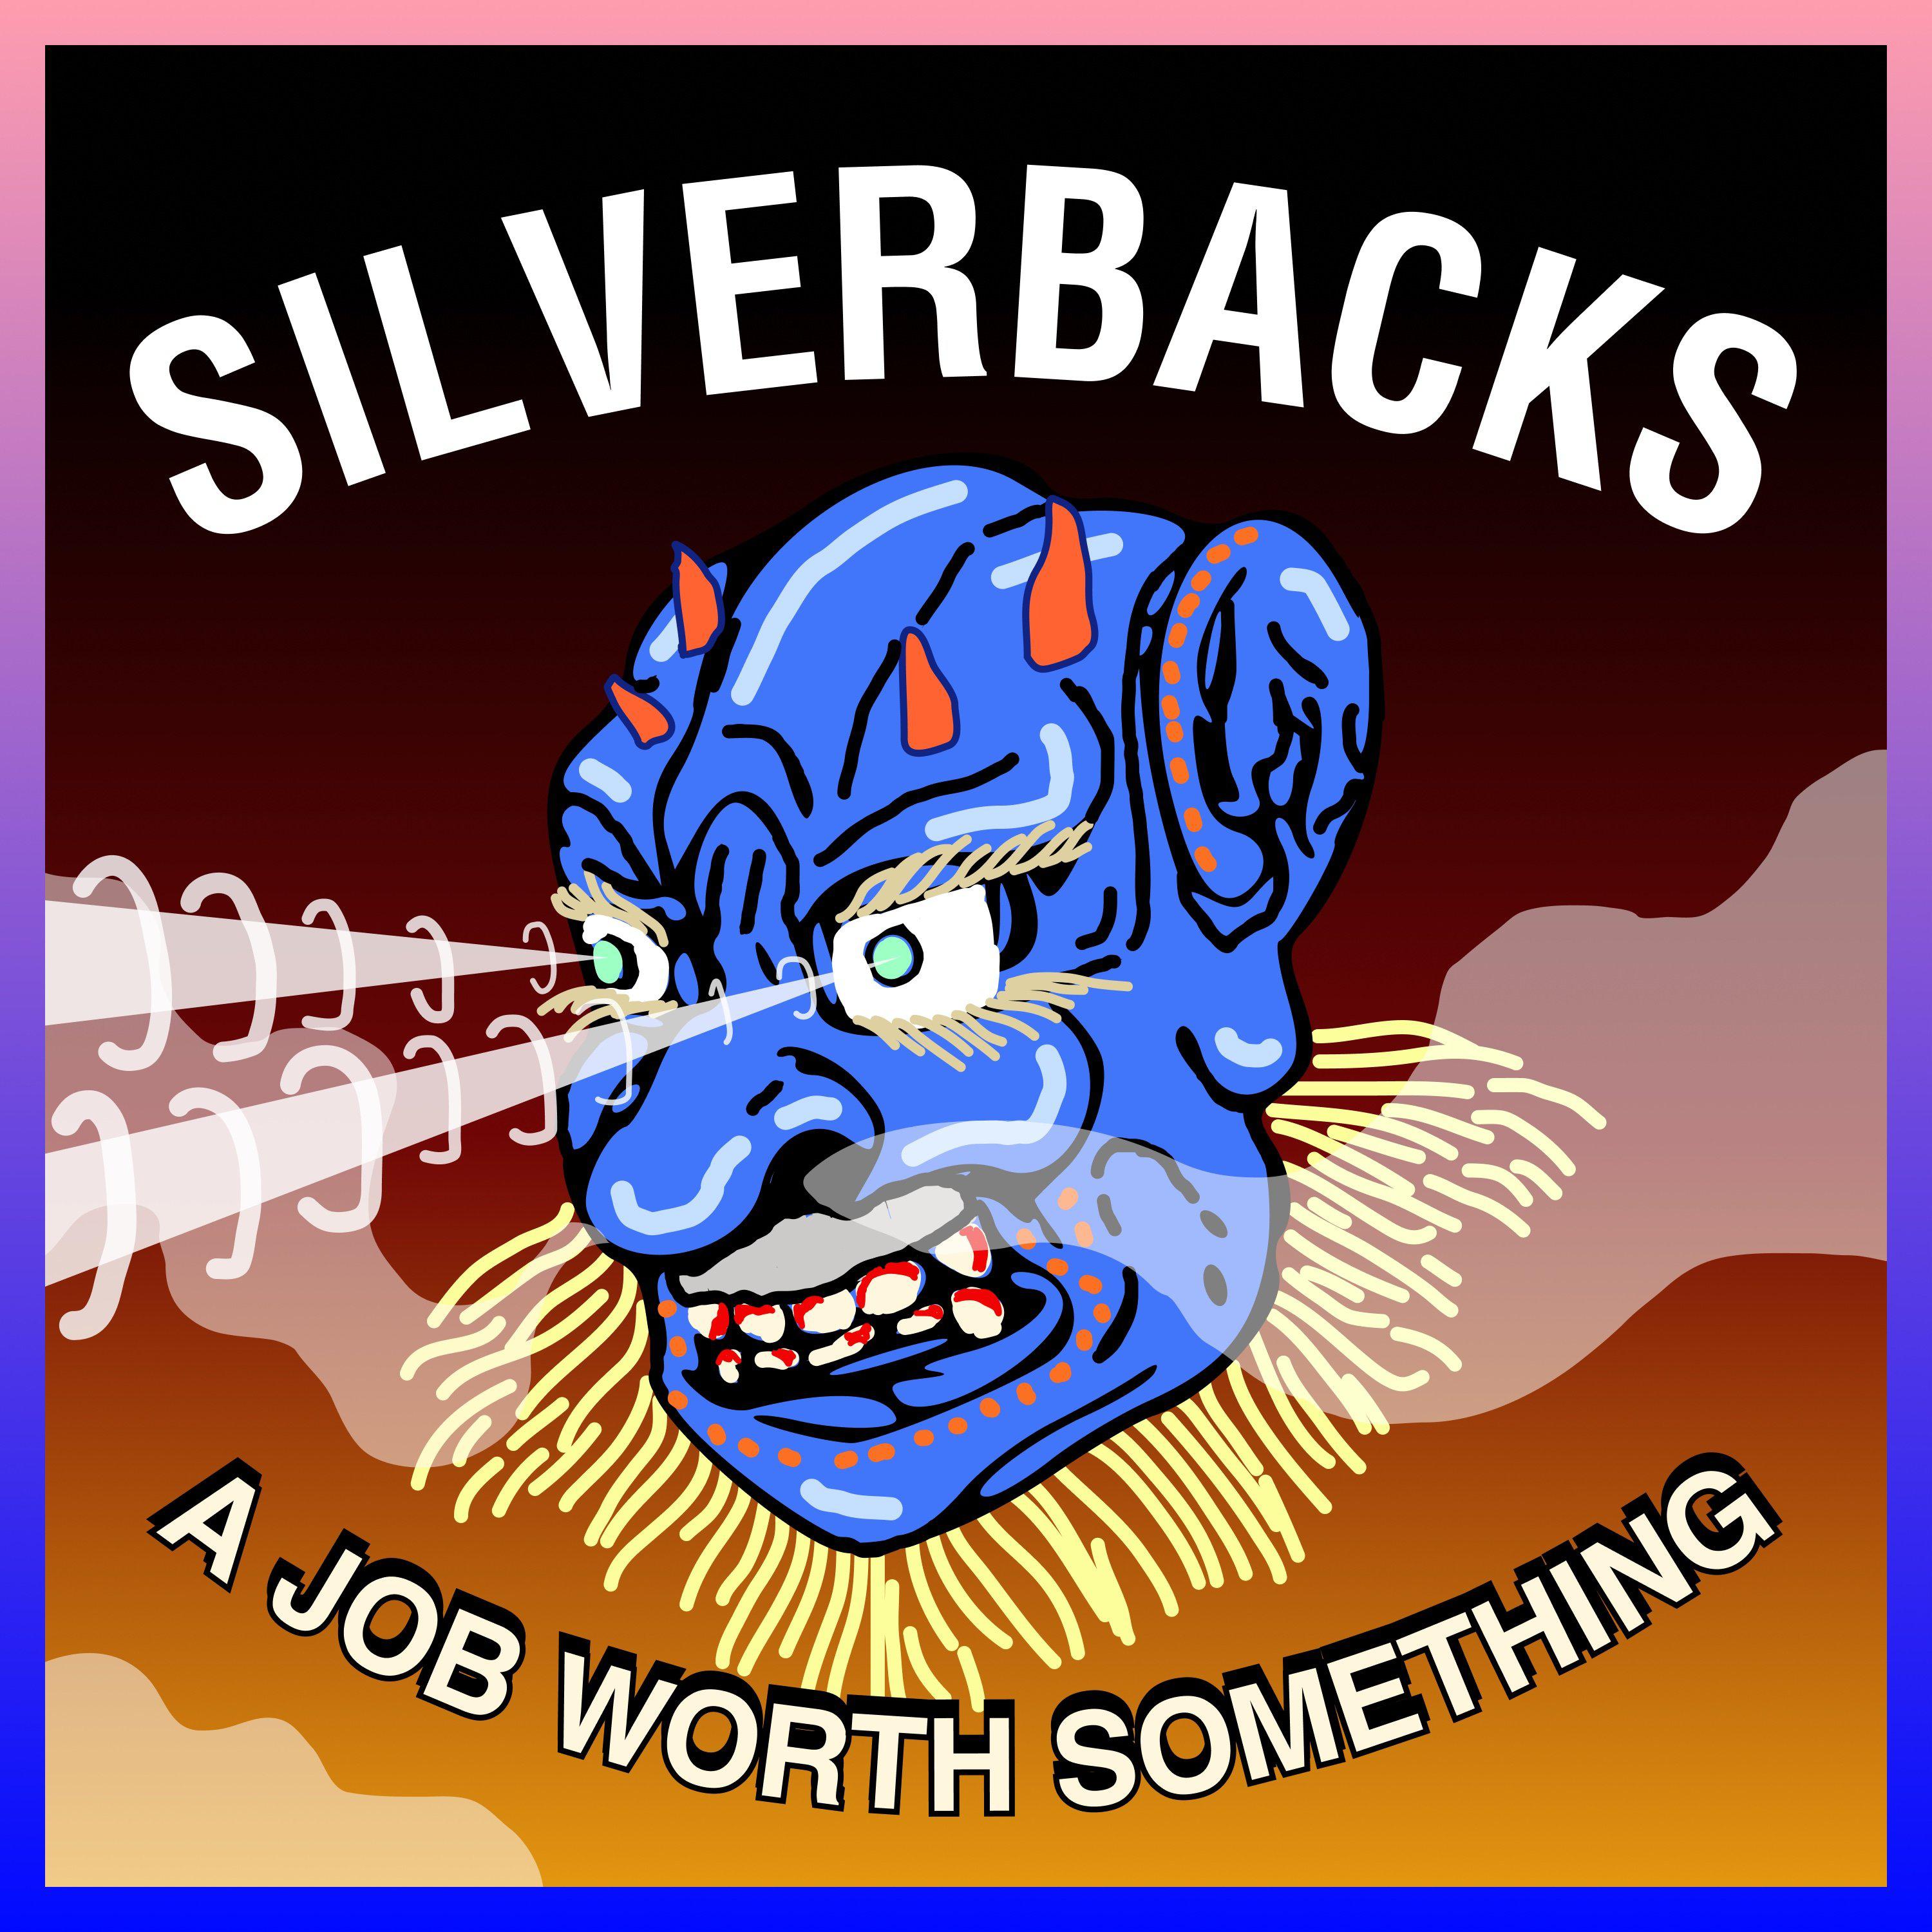 A Job Worth Something歌词 歌手Silverbacks-专辑A Job Worth Something-单曲《A Job Worth Something》LRC歌词下载